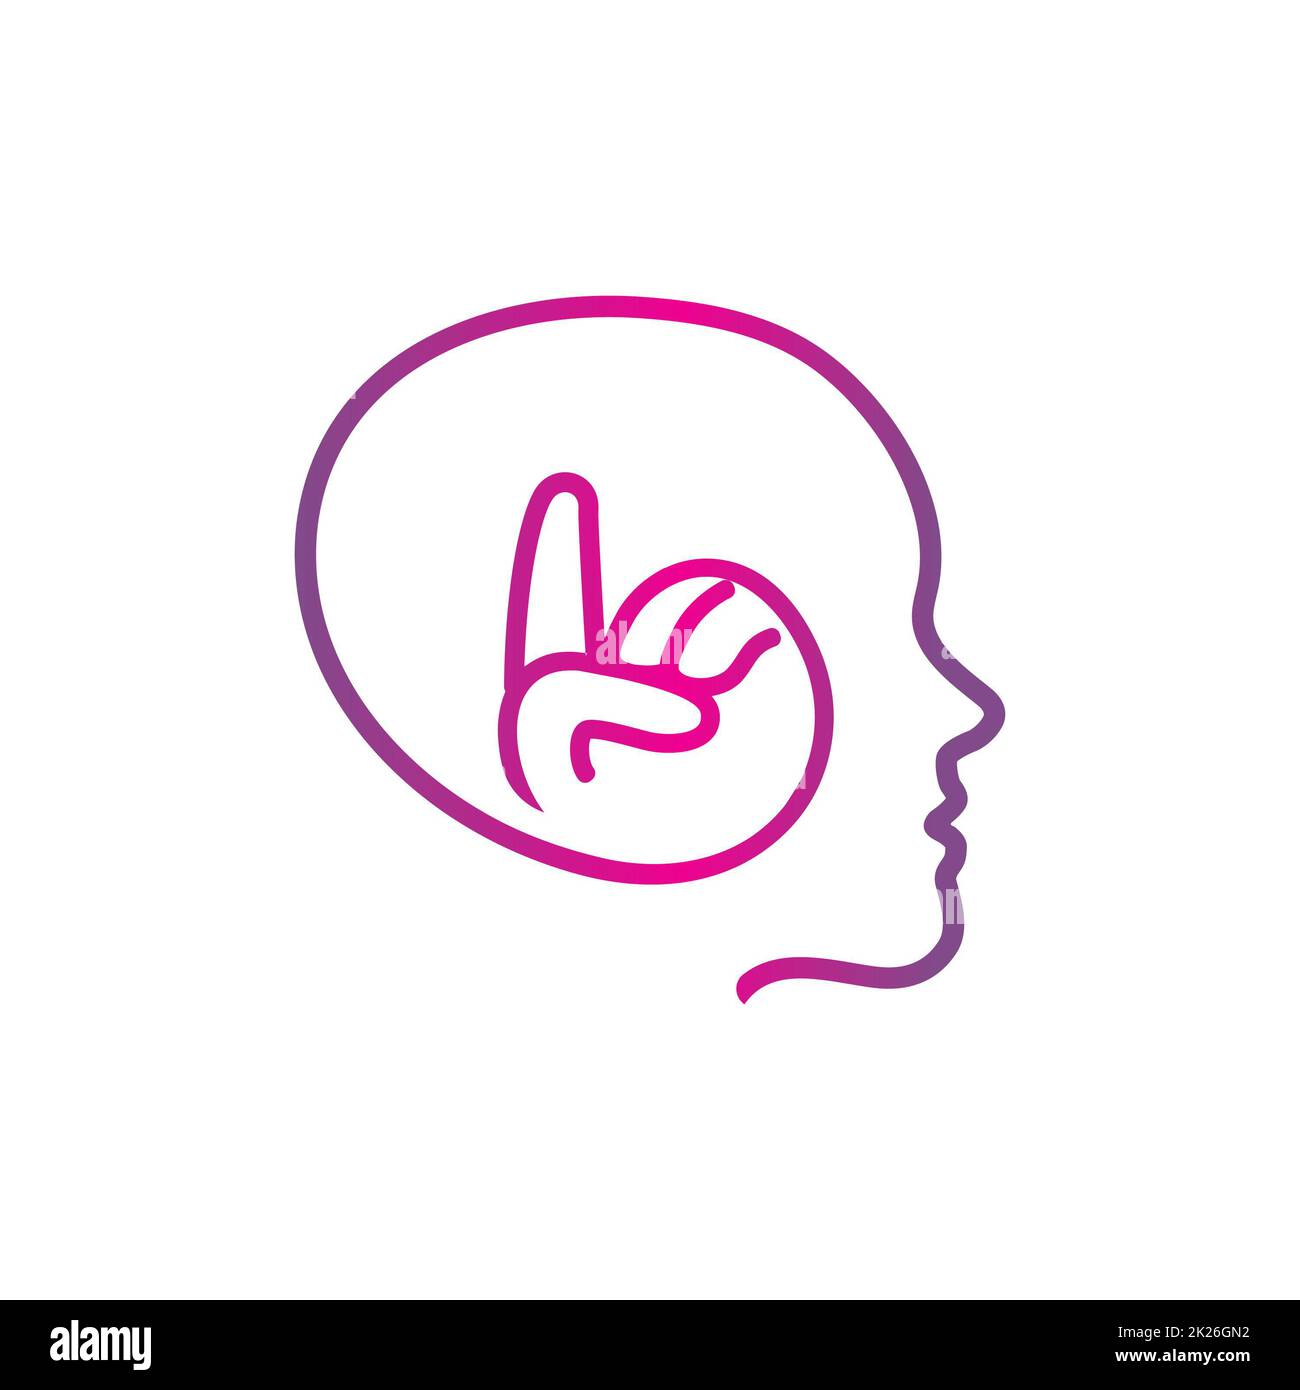 Logo isolato rosa vettoriale della silhouette della testa umana. Immagine dell'indice. Cervello creativo. Simbolo persona intelligente. Uomo intelligente. Illustrazione delle cuffie. Etichetta musicale. Emblema WALKMAN®. Segnale radio. Foto Stock